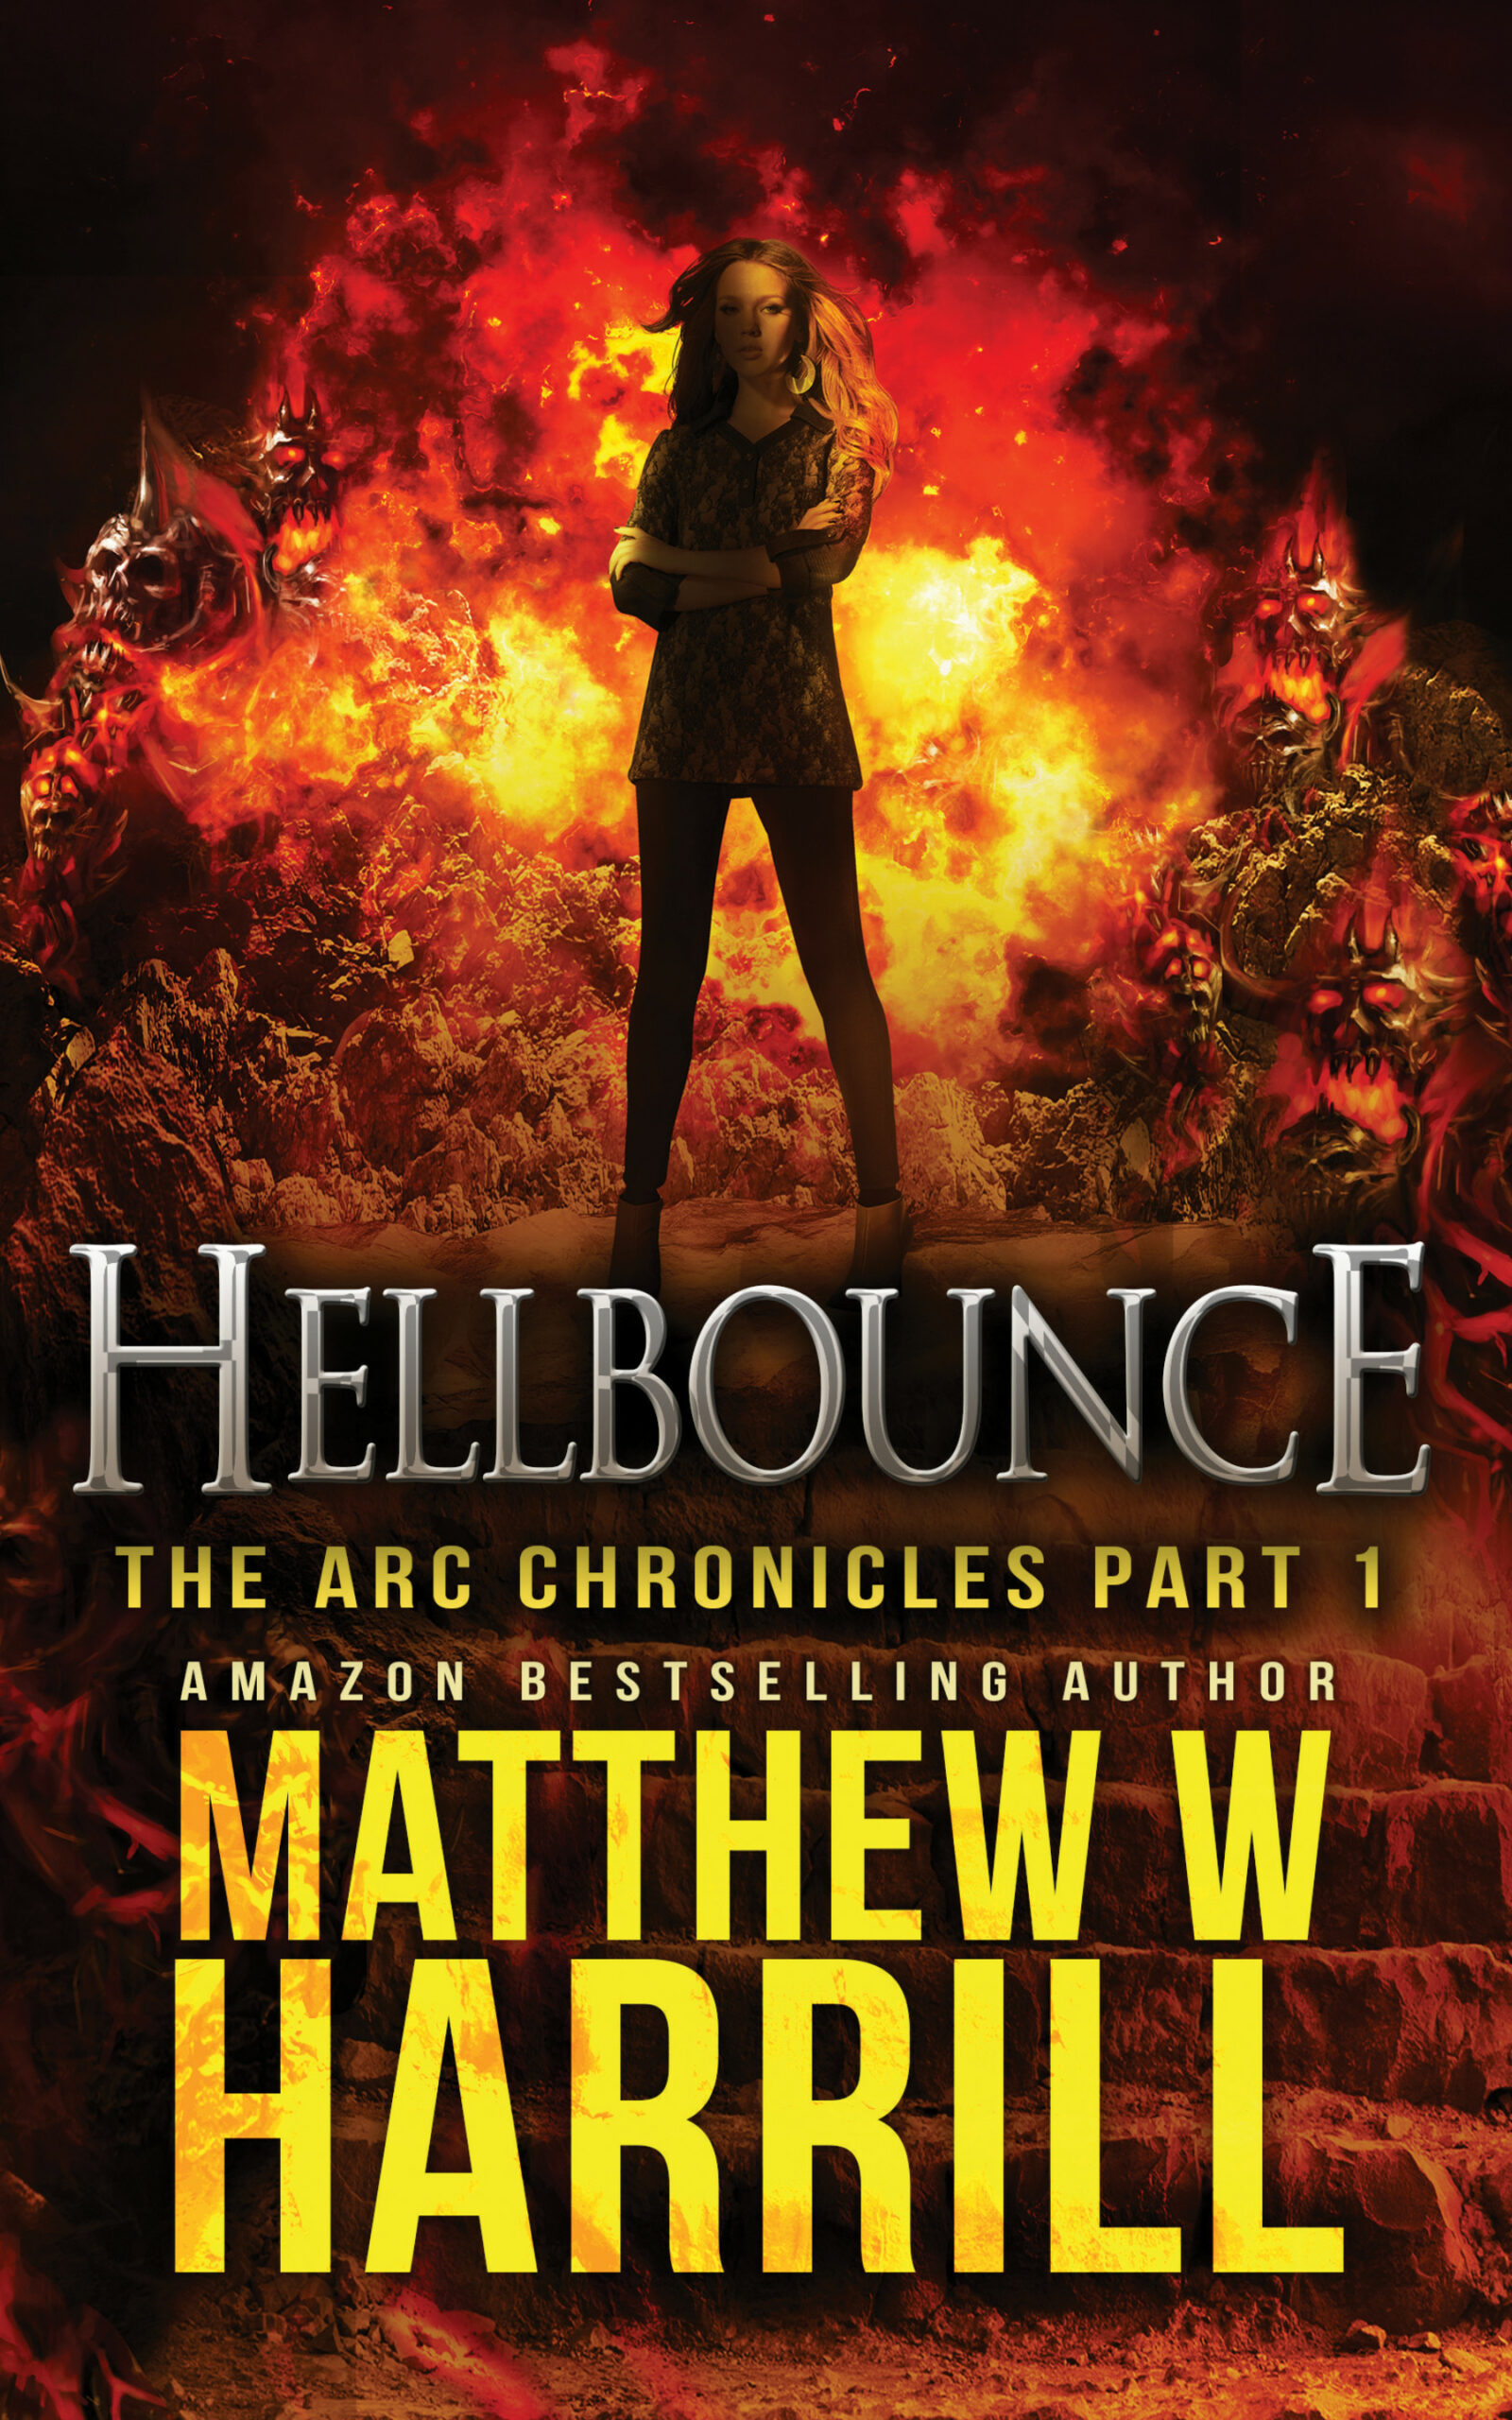 FREE: Hellbounce by Matthew W. Harrill